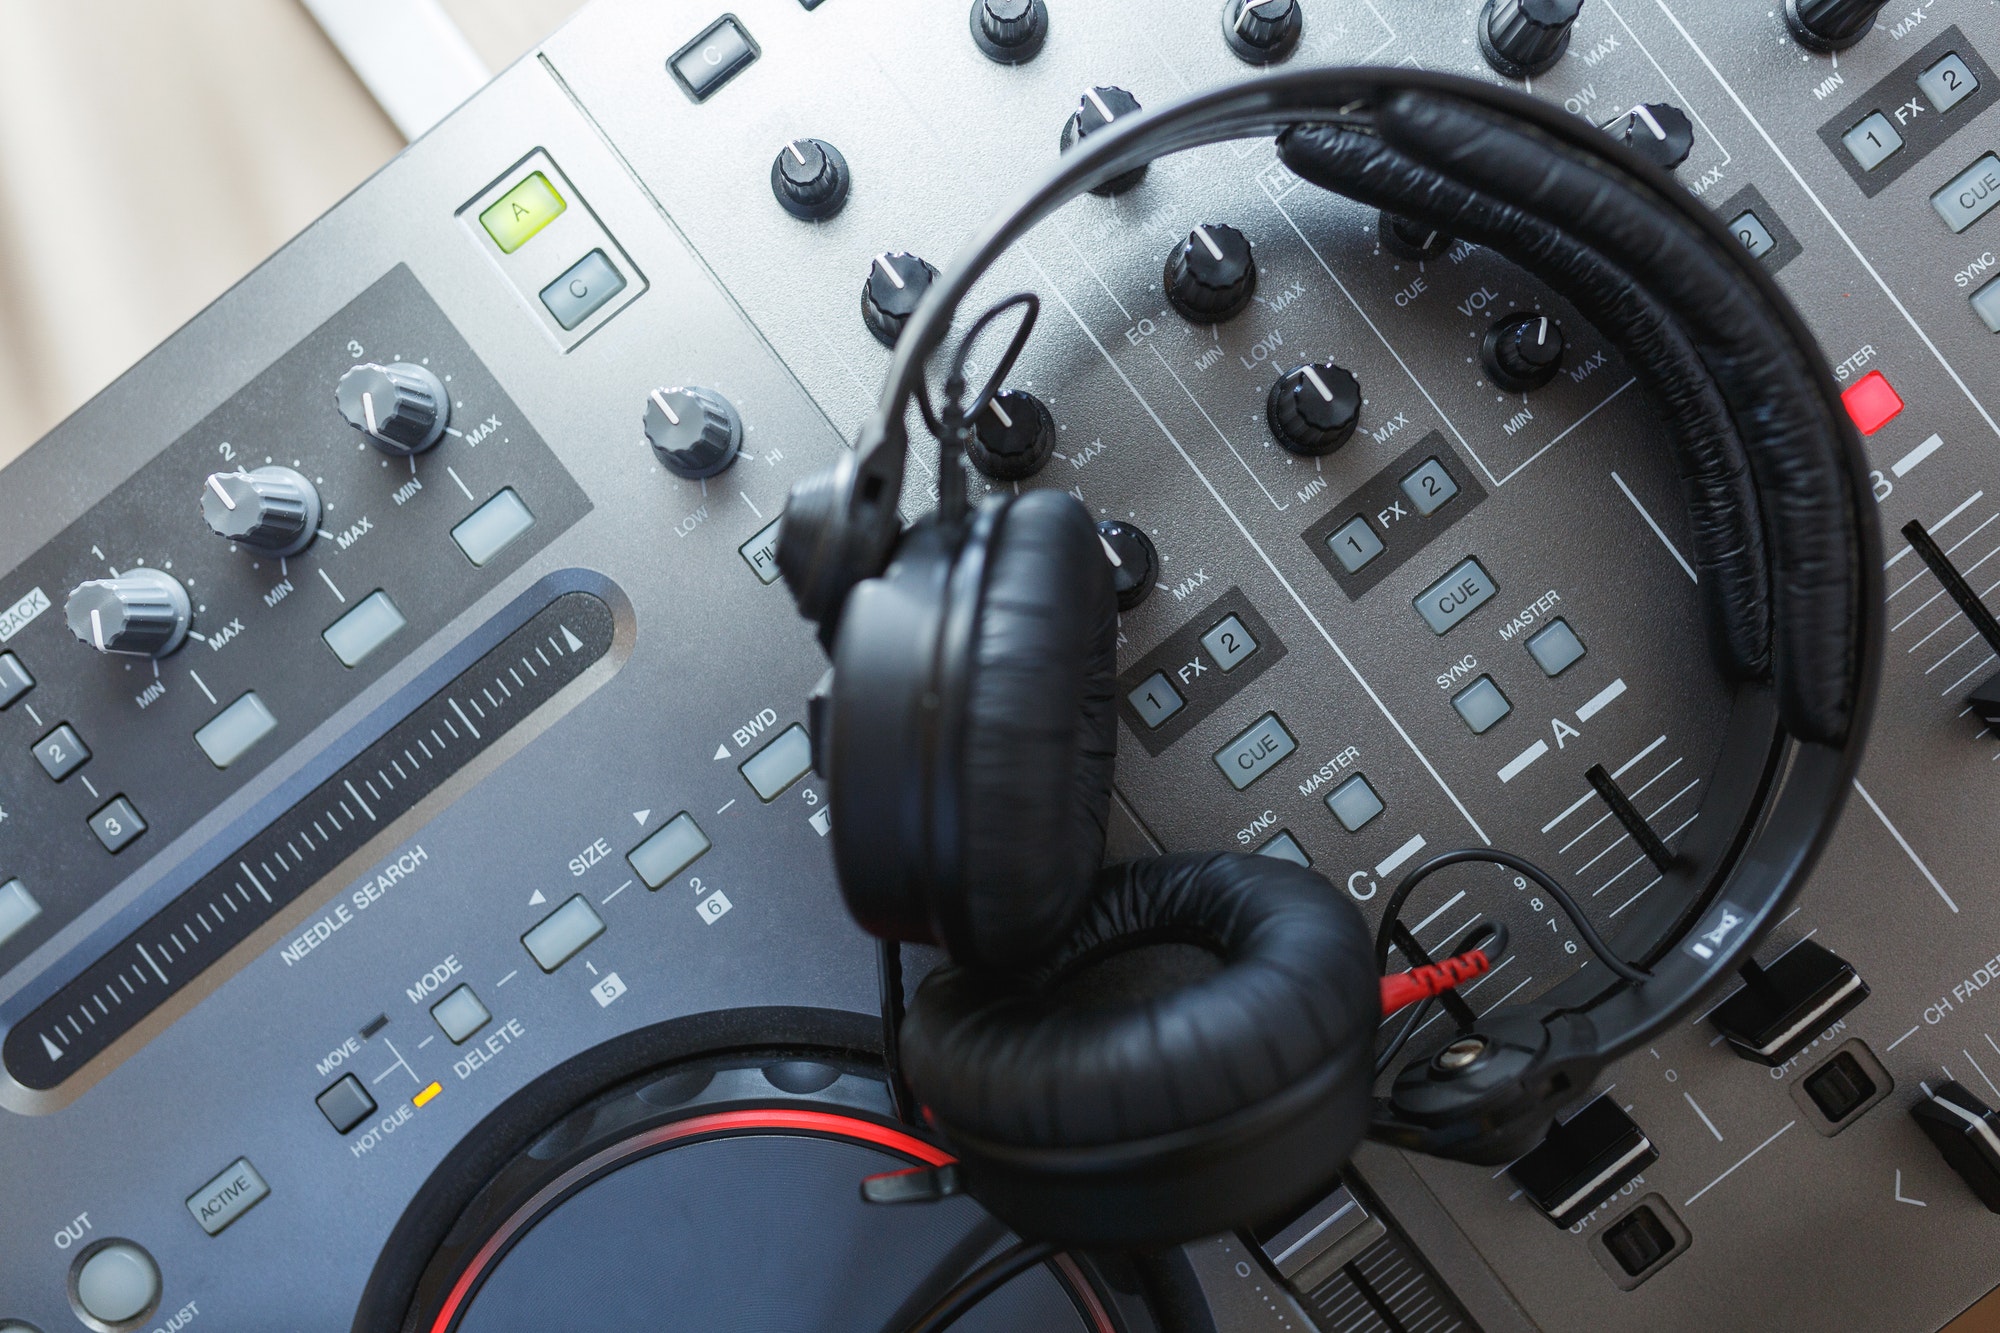 DJ Mixer with headphones.